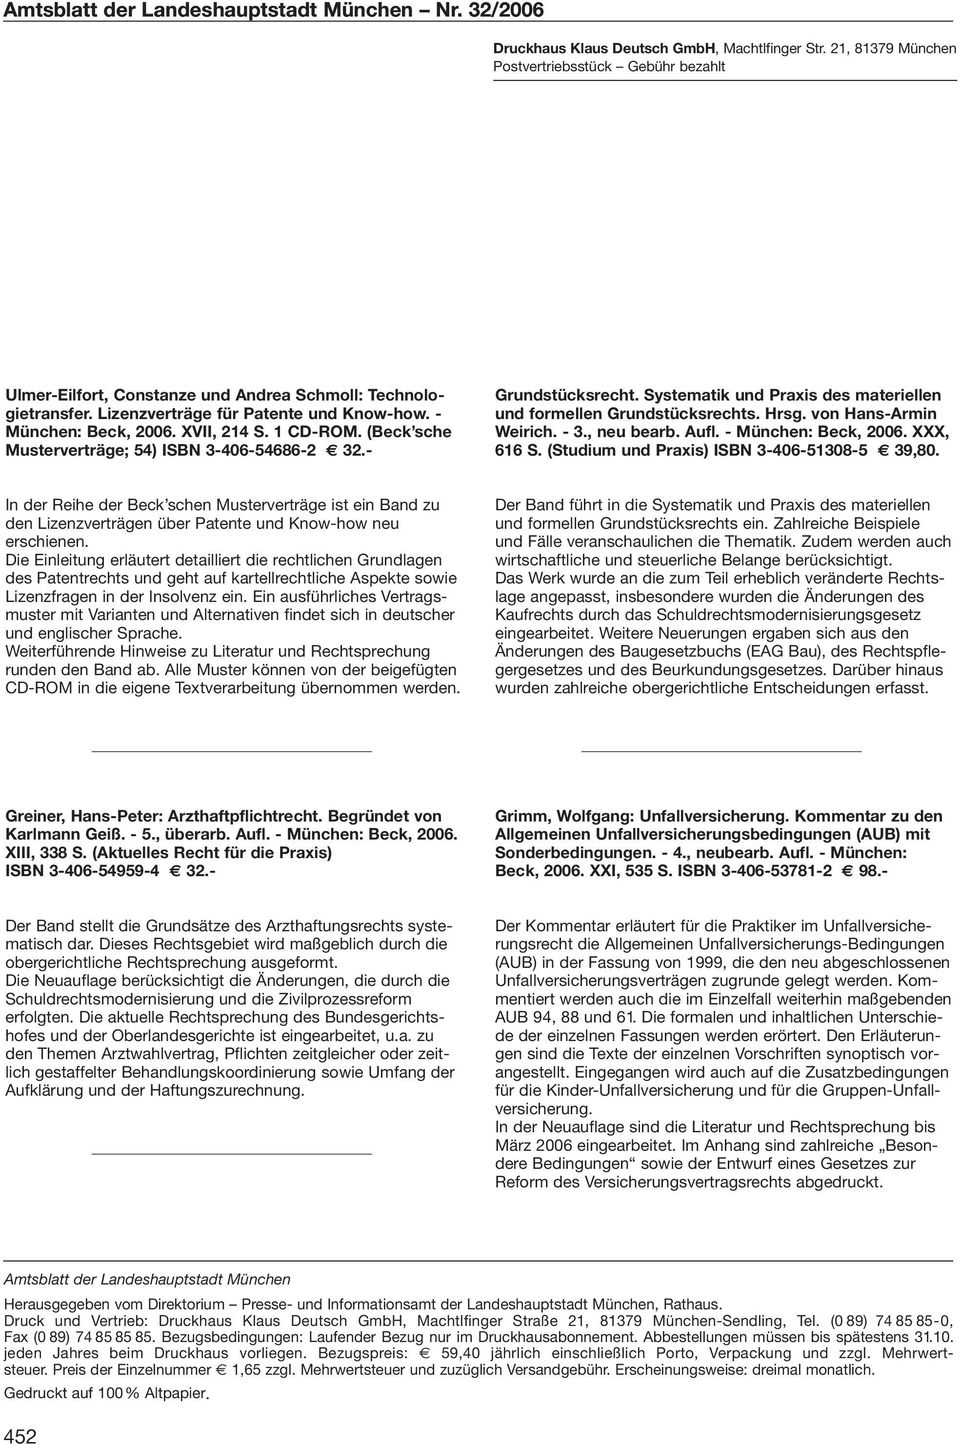 1 CD-ROM. (Beck sche Musterverträge; 54) ISBN 3-406-54686-2 32.- Grundstücksrecht. Systematik und Praxis des materiellen und formellen Grundstücksrechts. Hrsg. von Hans-Armin Weirich. - 3., neu bearb.